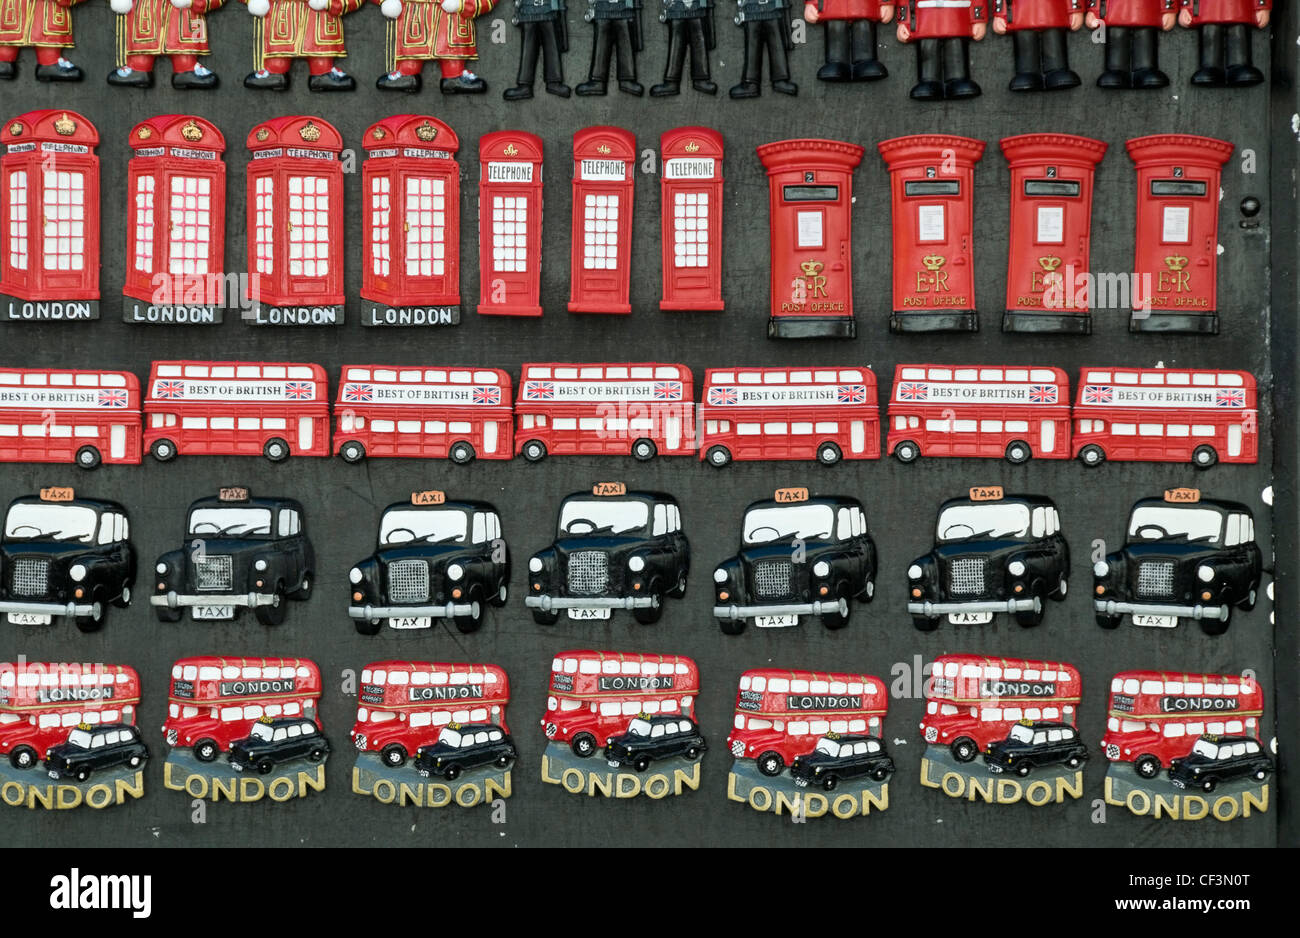 Eine Auswahl an London Souvenirs zum Verkauf im Westend von London. Stockfoto